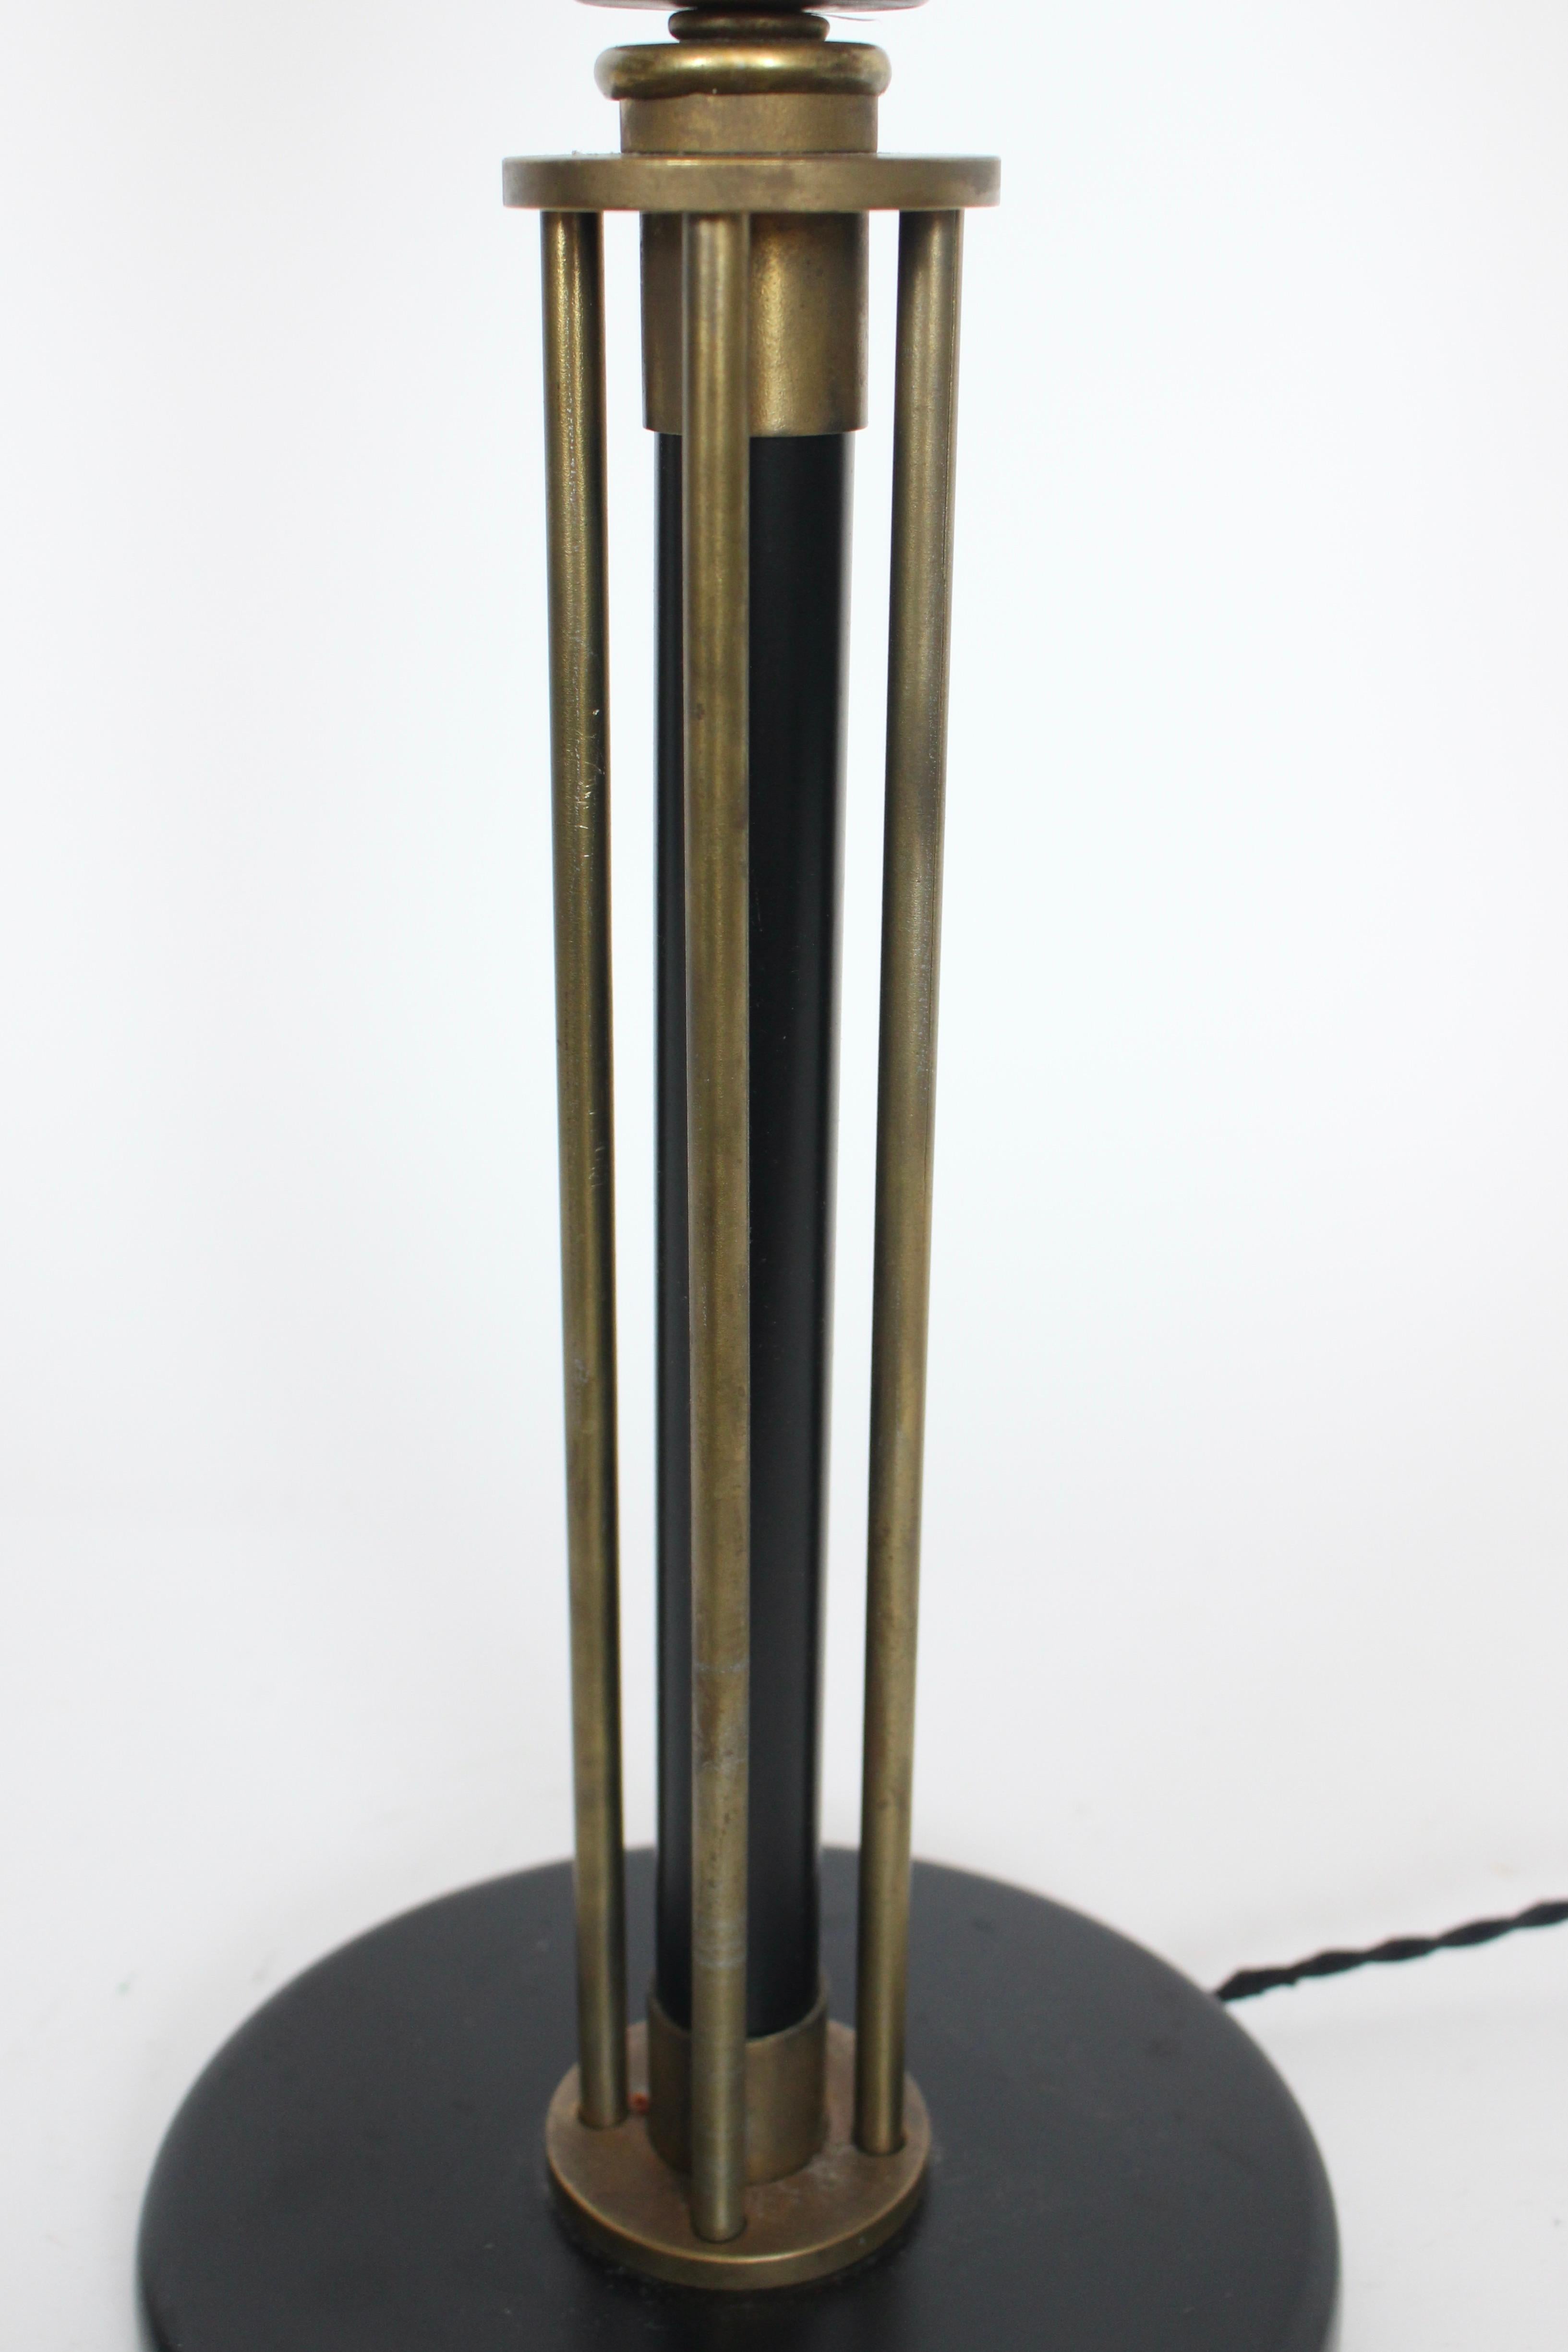 Walter Von Nessen Machine Age Black Enamel & Brass Table Lamp, 1940's For Sale 3